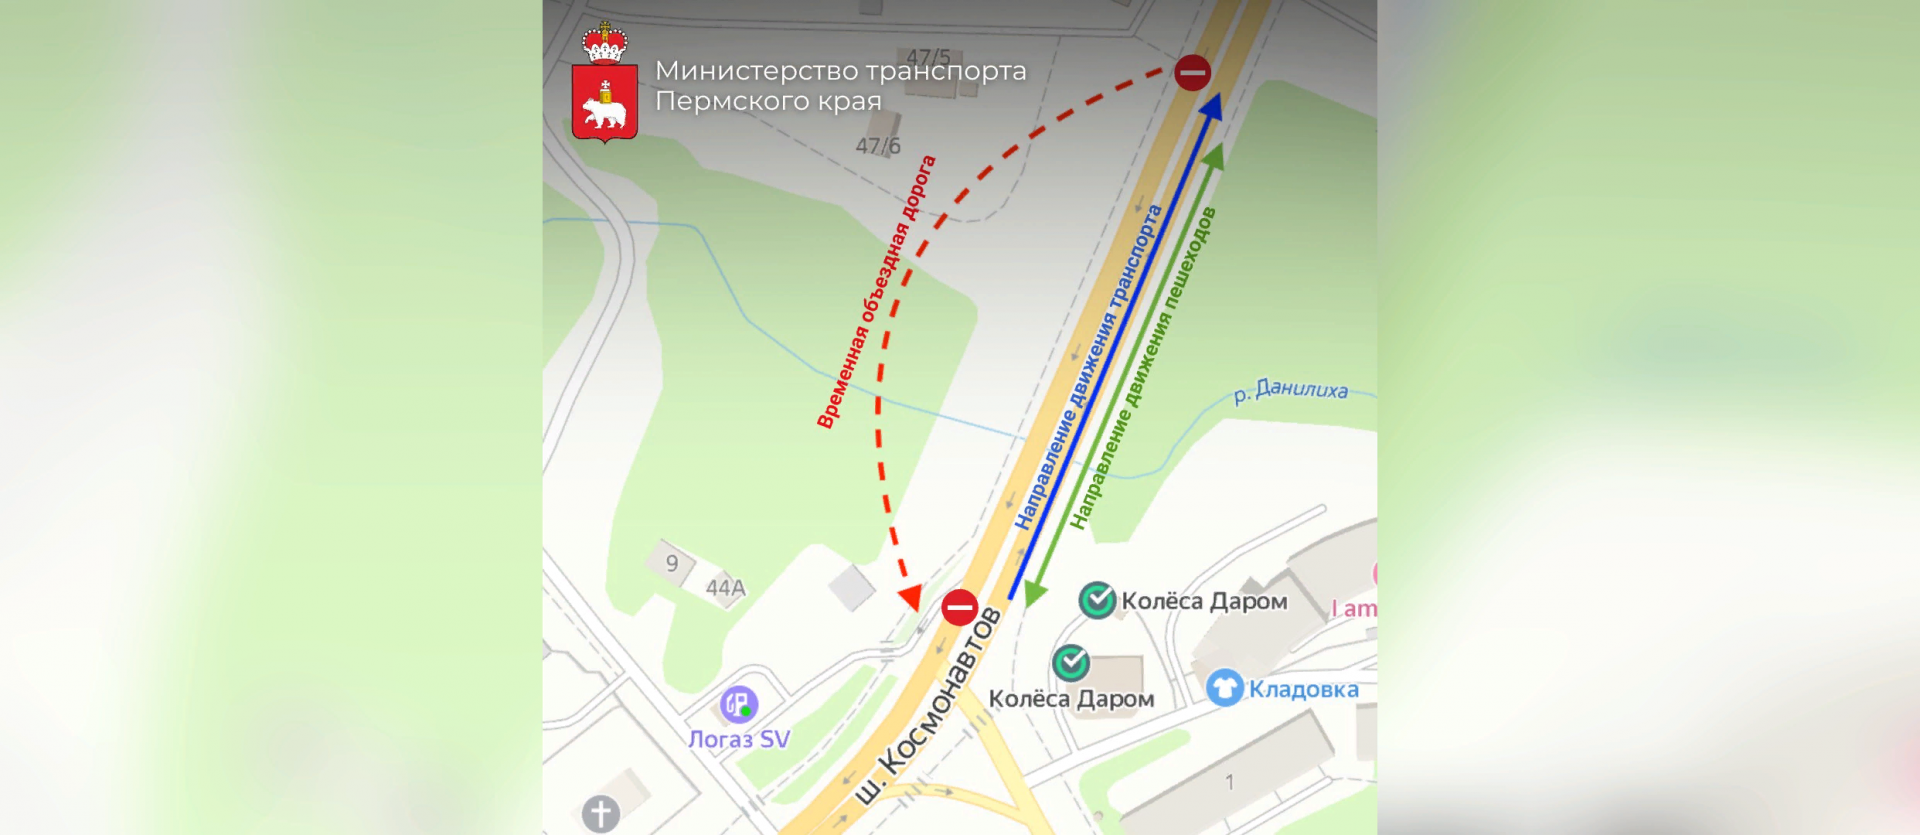 В Перми на два месяца закрывают движение по шоссе Космонавтов 